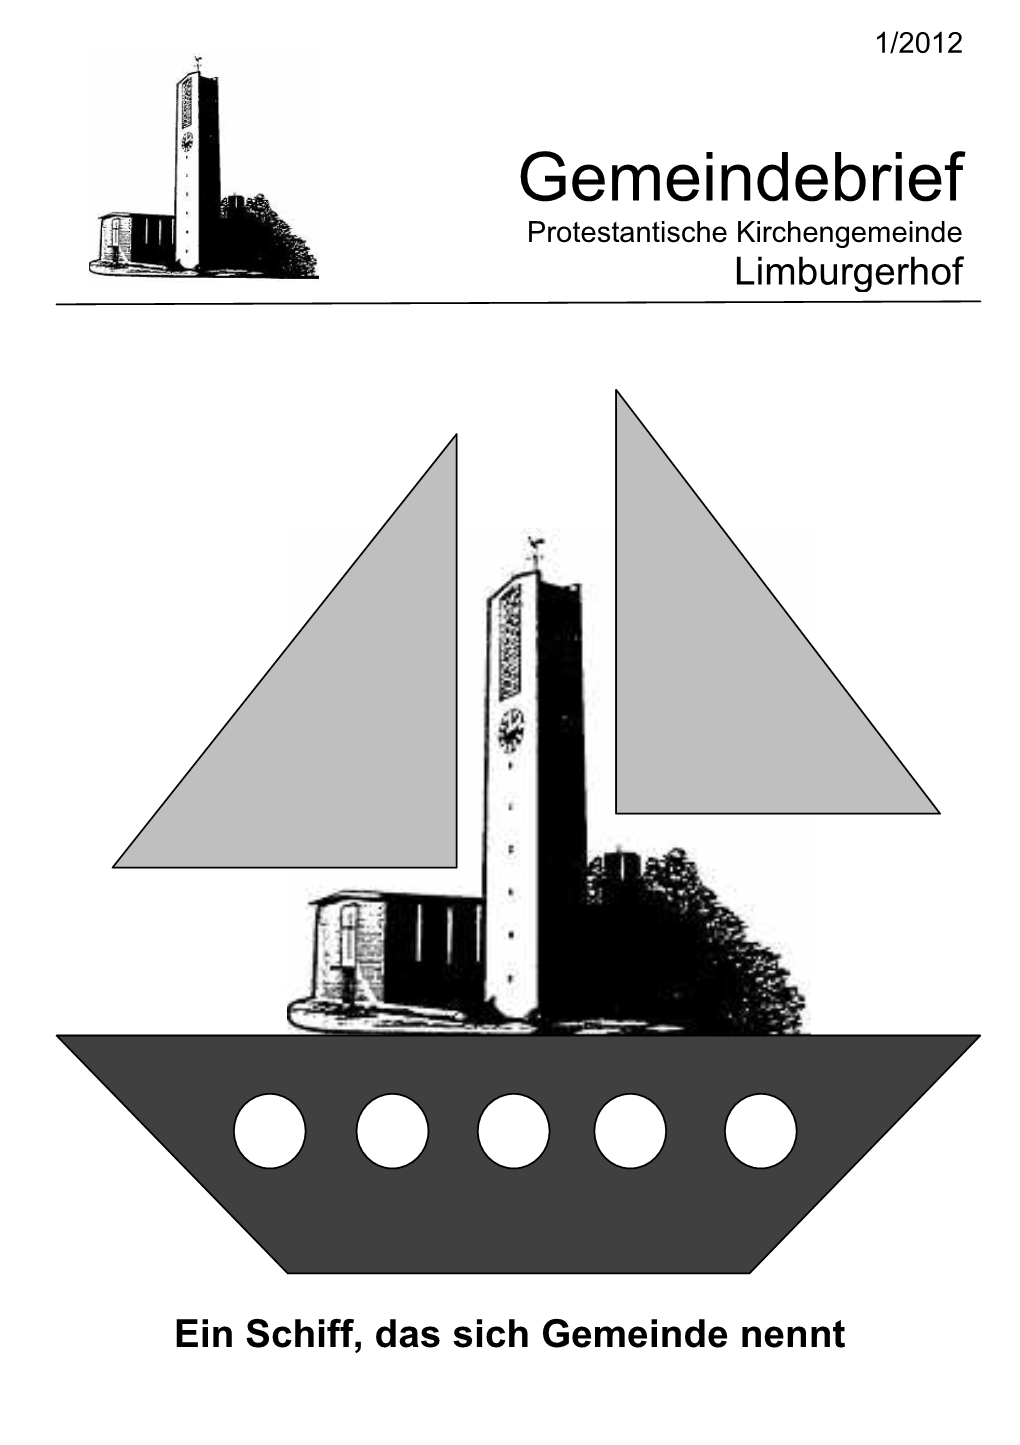 Gemeindebrief Protestantische Kirchengemeinde Limburgerhof